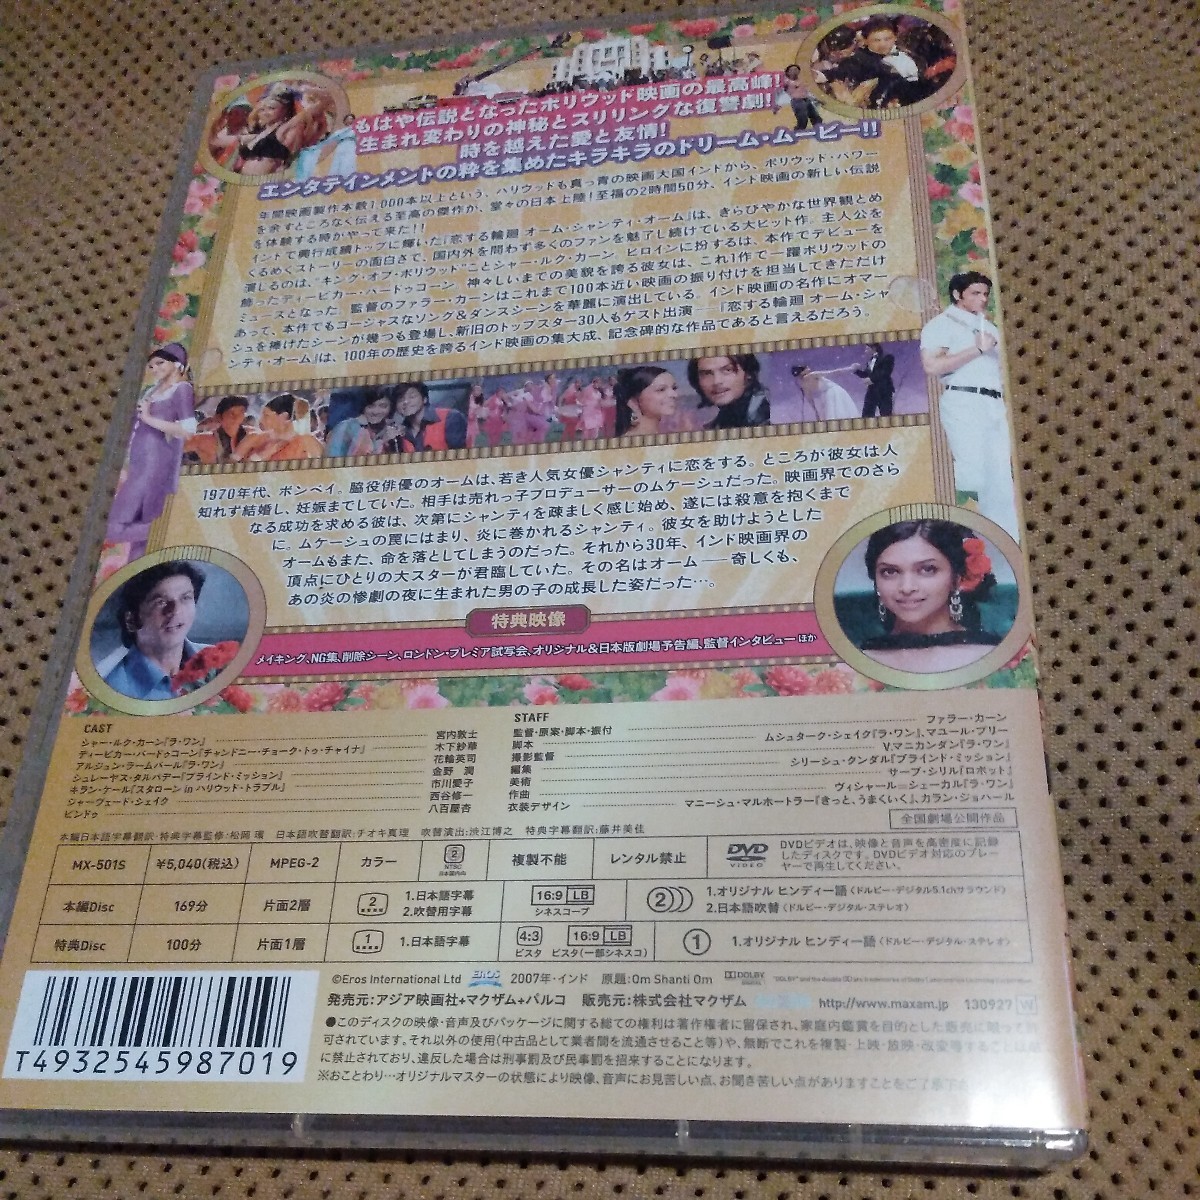 恋する輪廻 オーム・シャンティ・オーム DVD